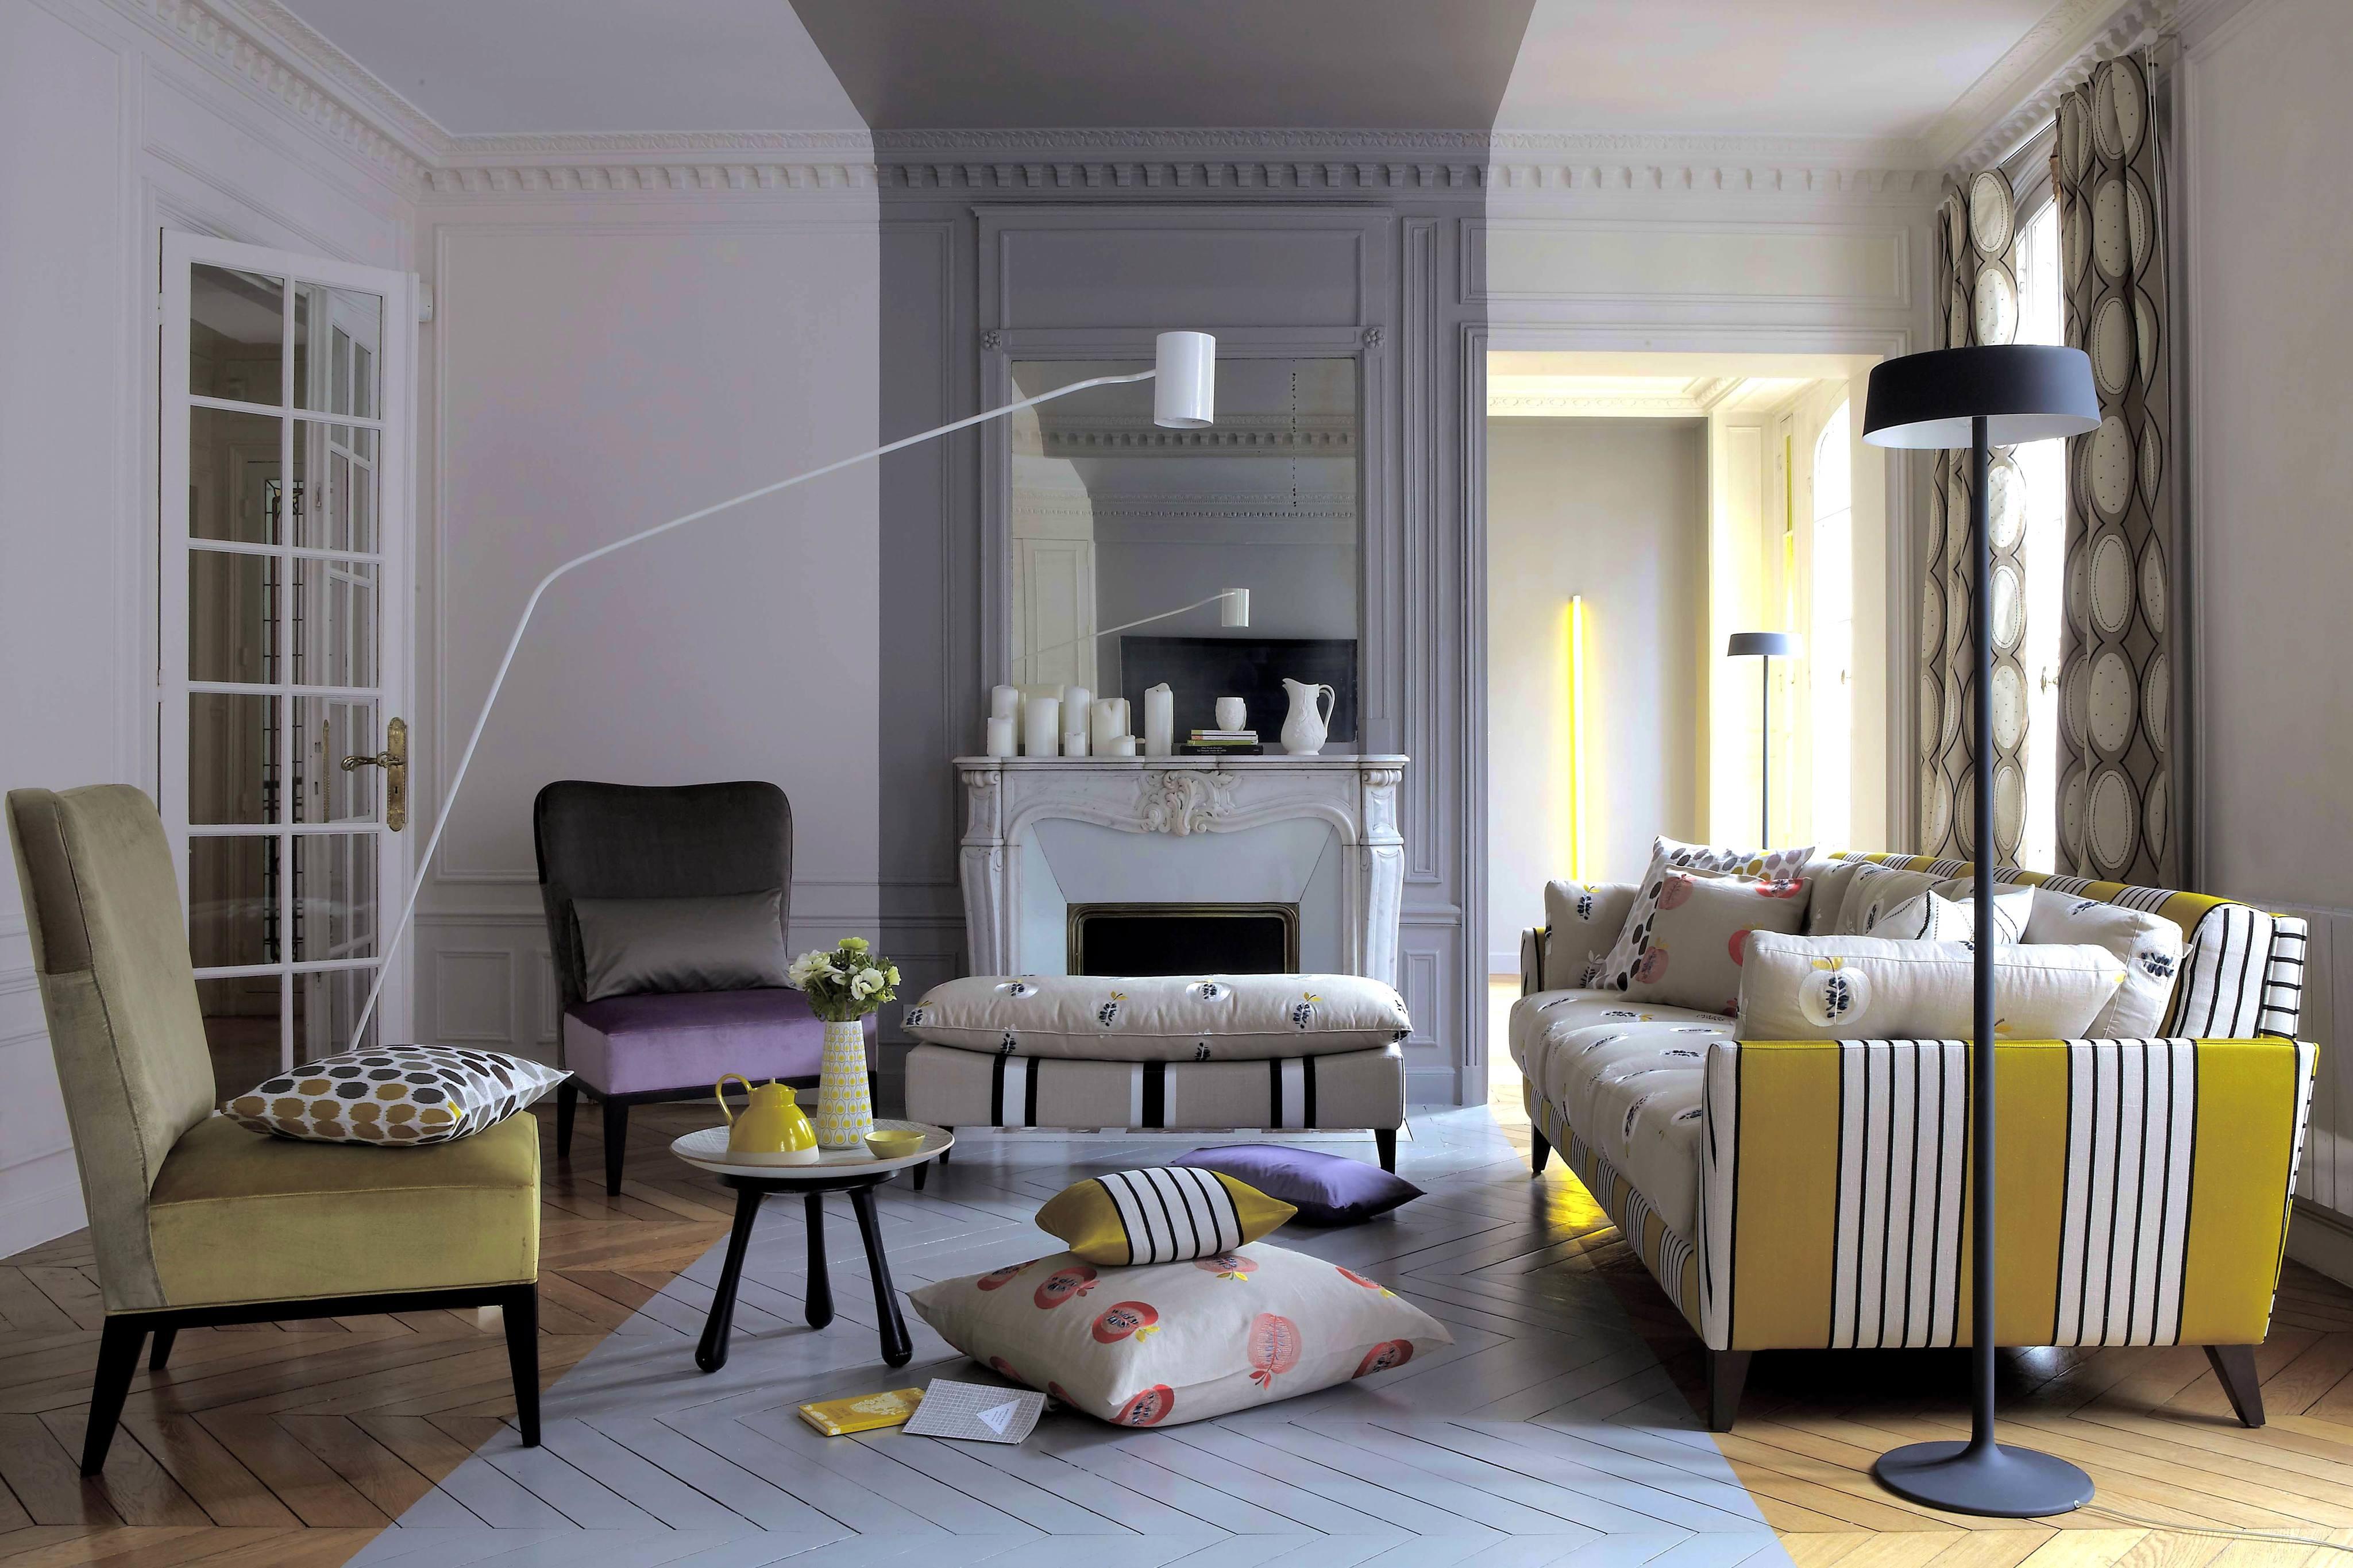 Gelb-weiß gestreiftes Sofa #gestreiftessofa ©Boussac über Pierre Frey